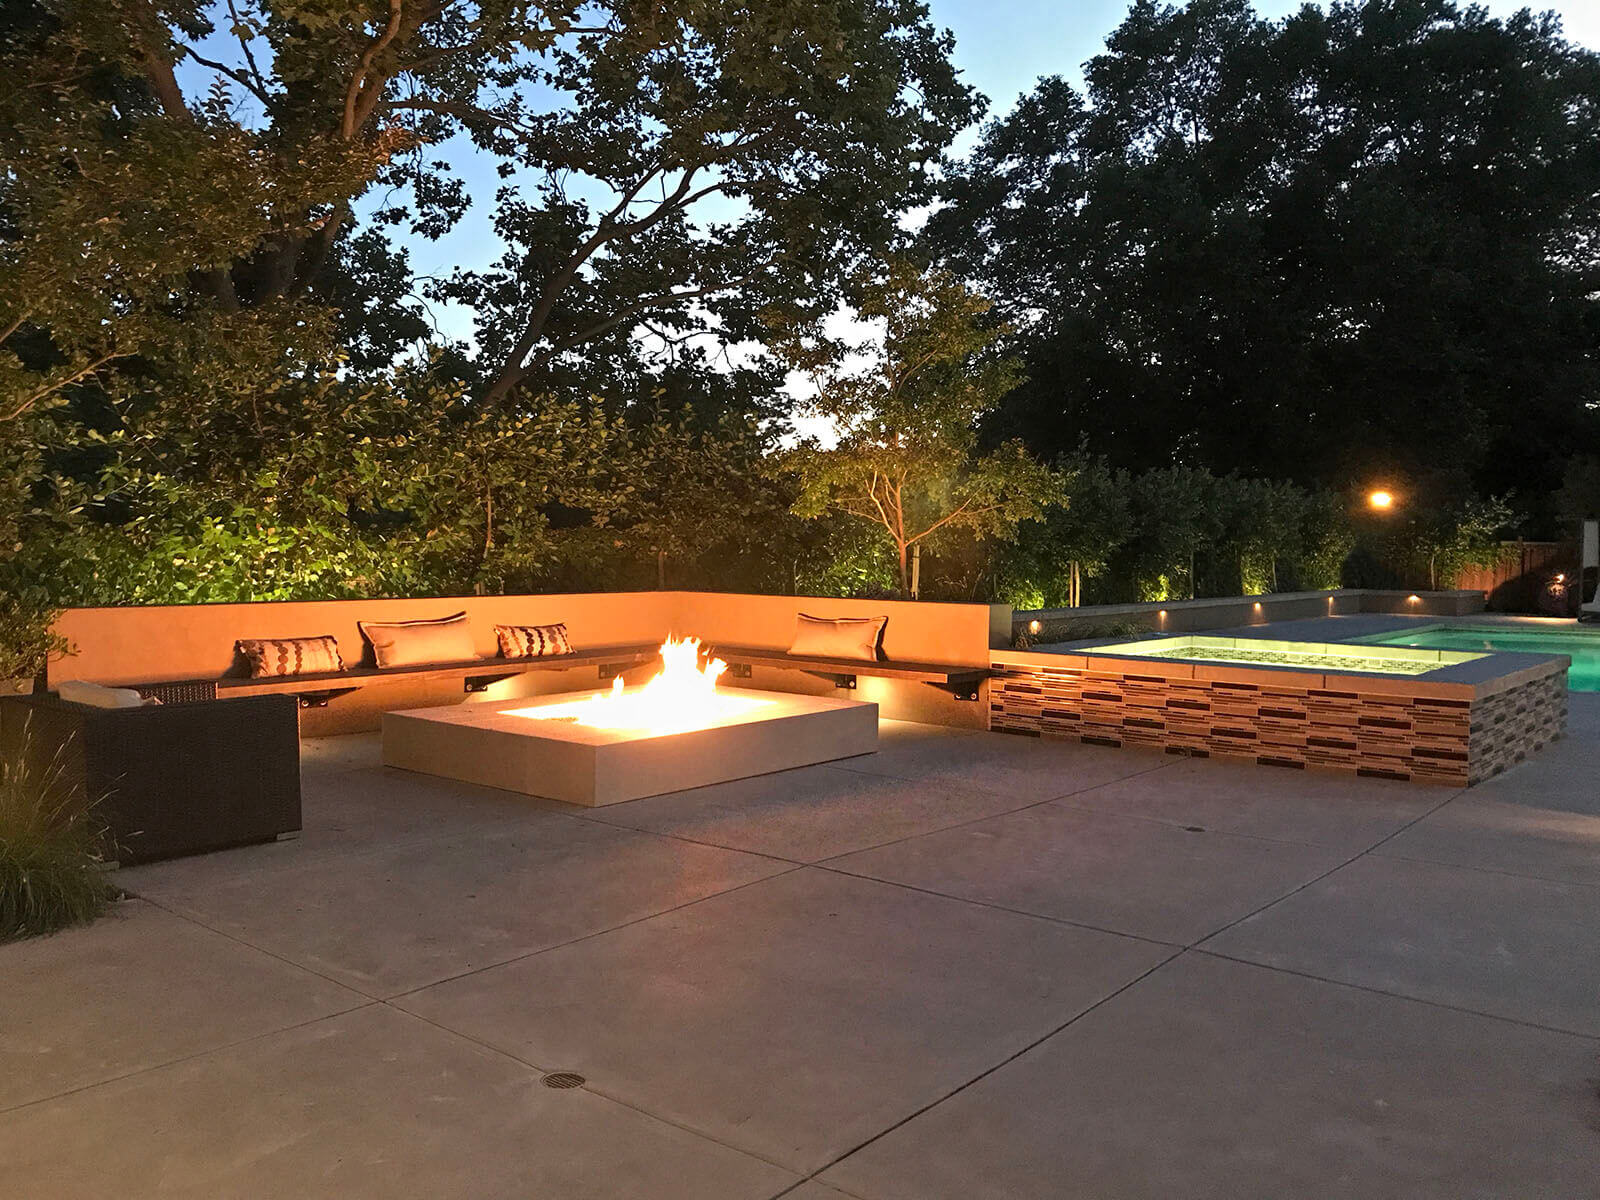 Contemporary minimal concrete fireplace with wrap-around seating on stone patio